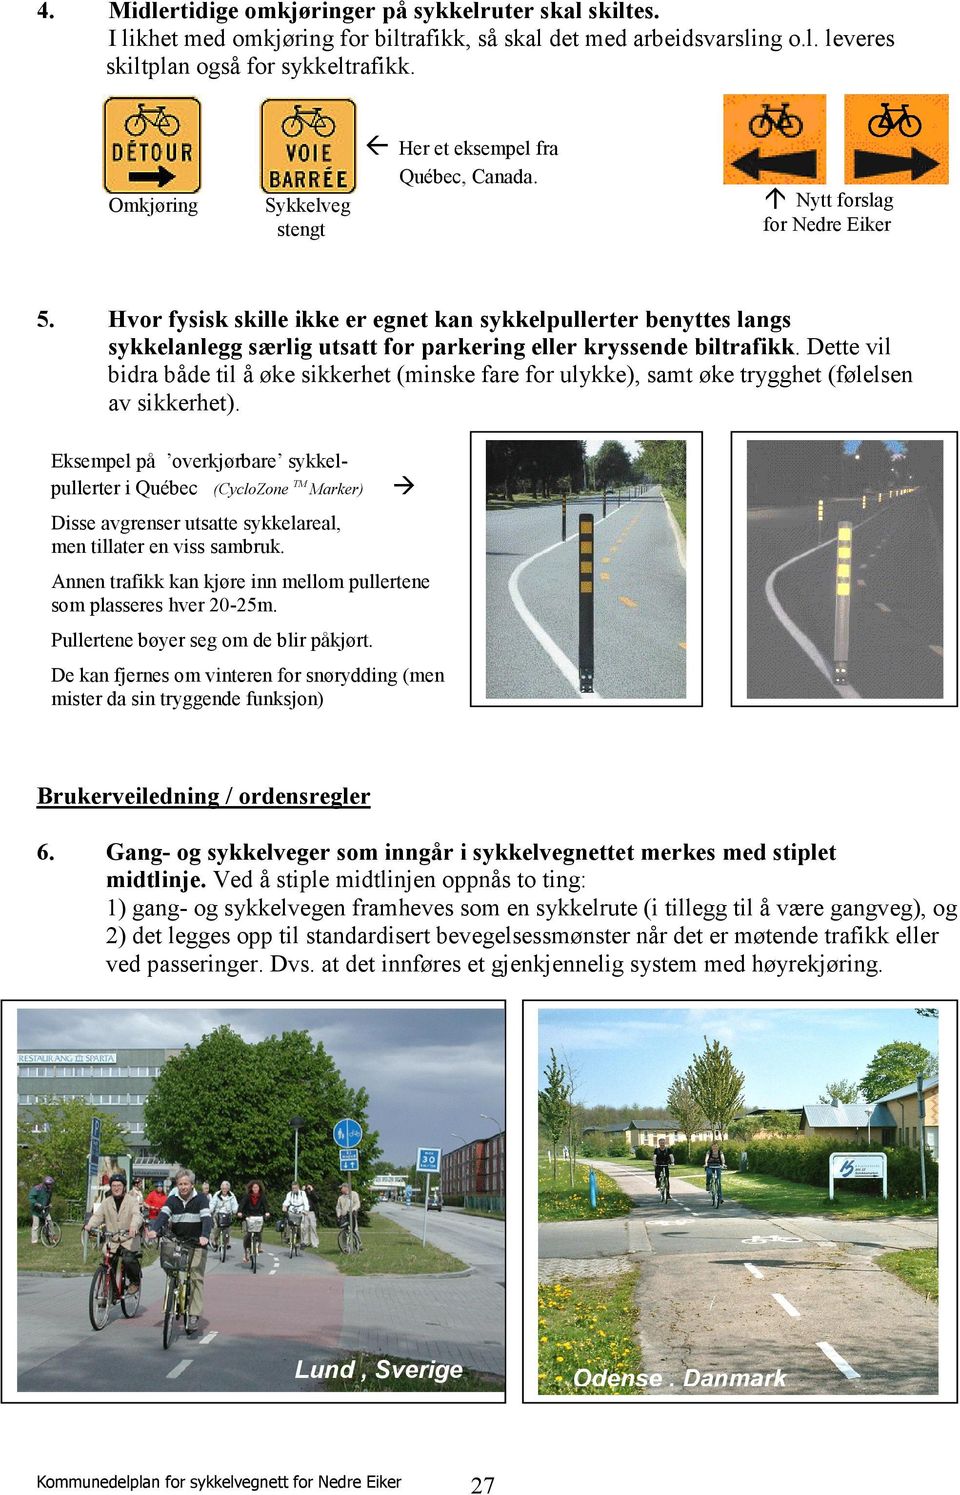 Hvor fysisk skille ikke er egnet kan sykkelpullerter benyttes langs sykkelanlegg særlig utsatt for parkering eller kryssende biltrafikk.